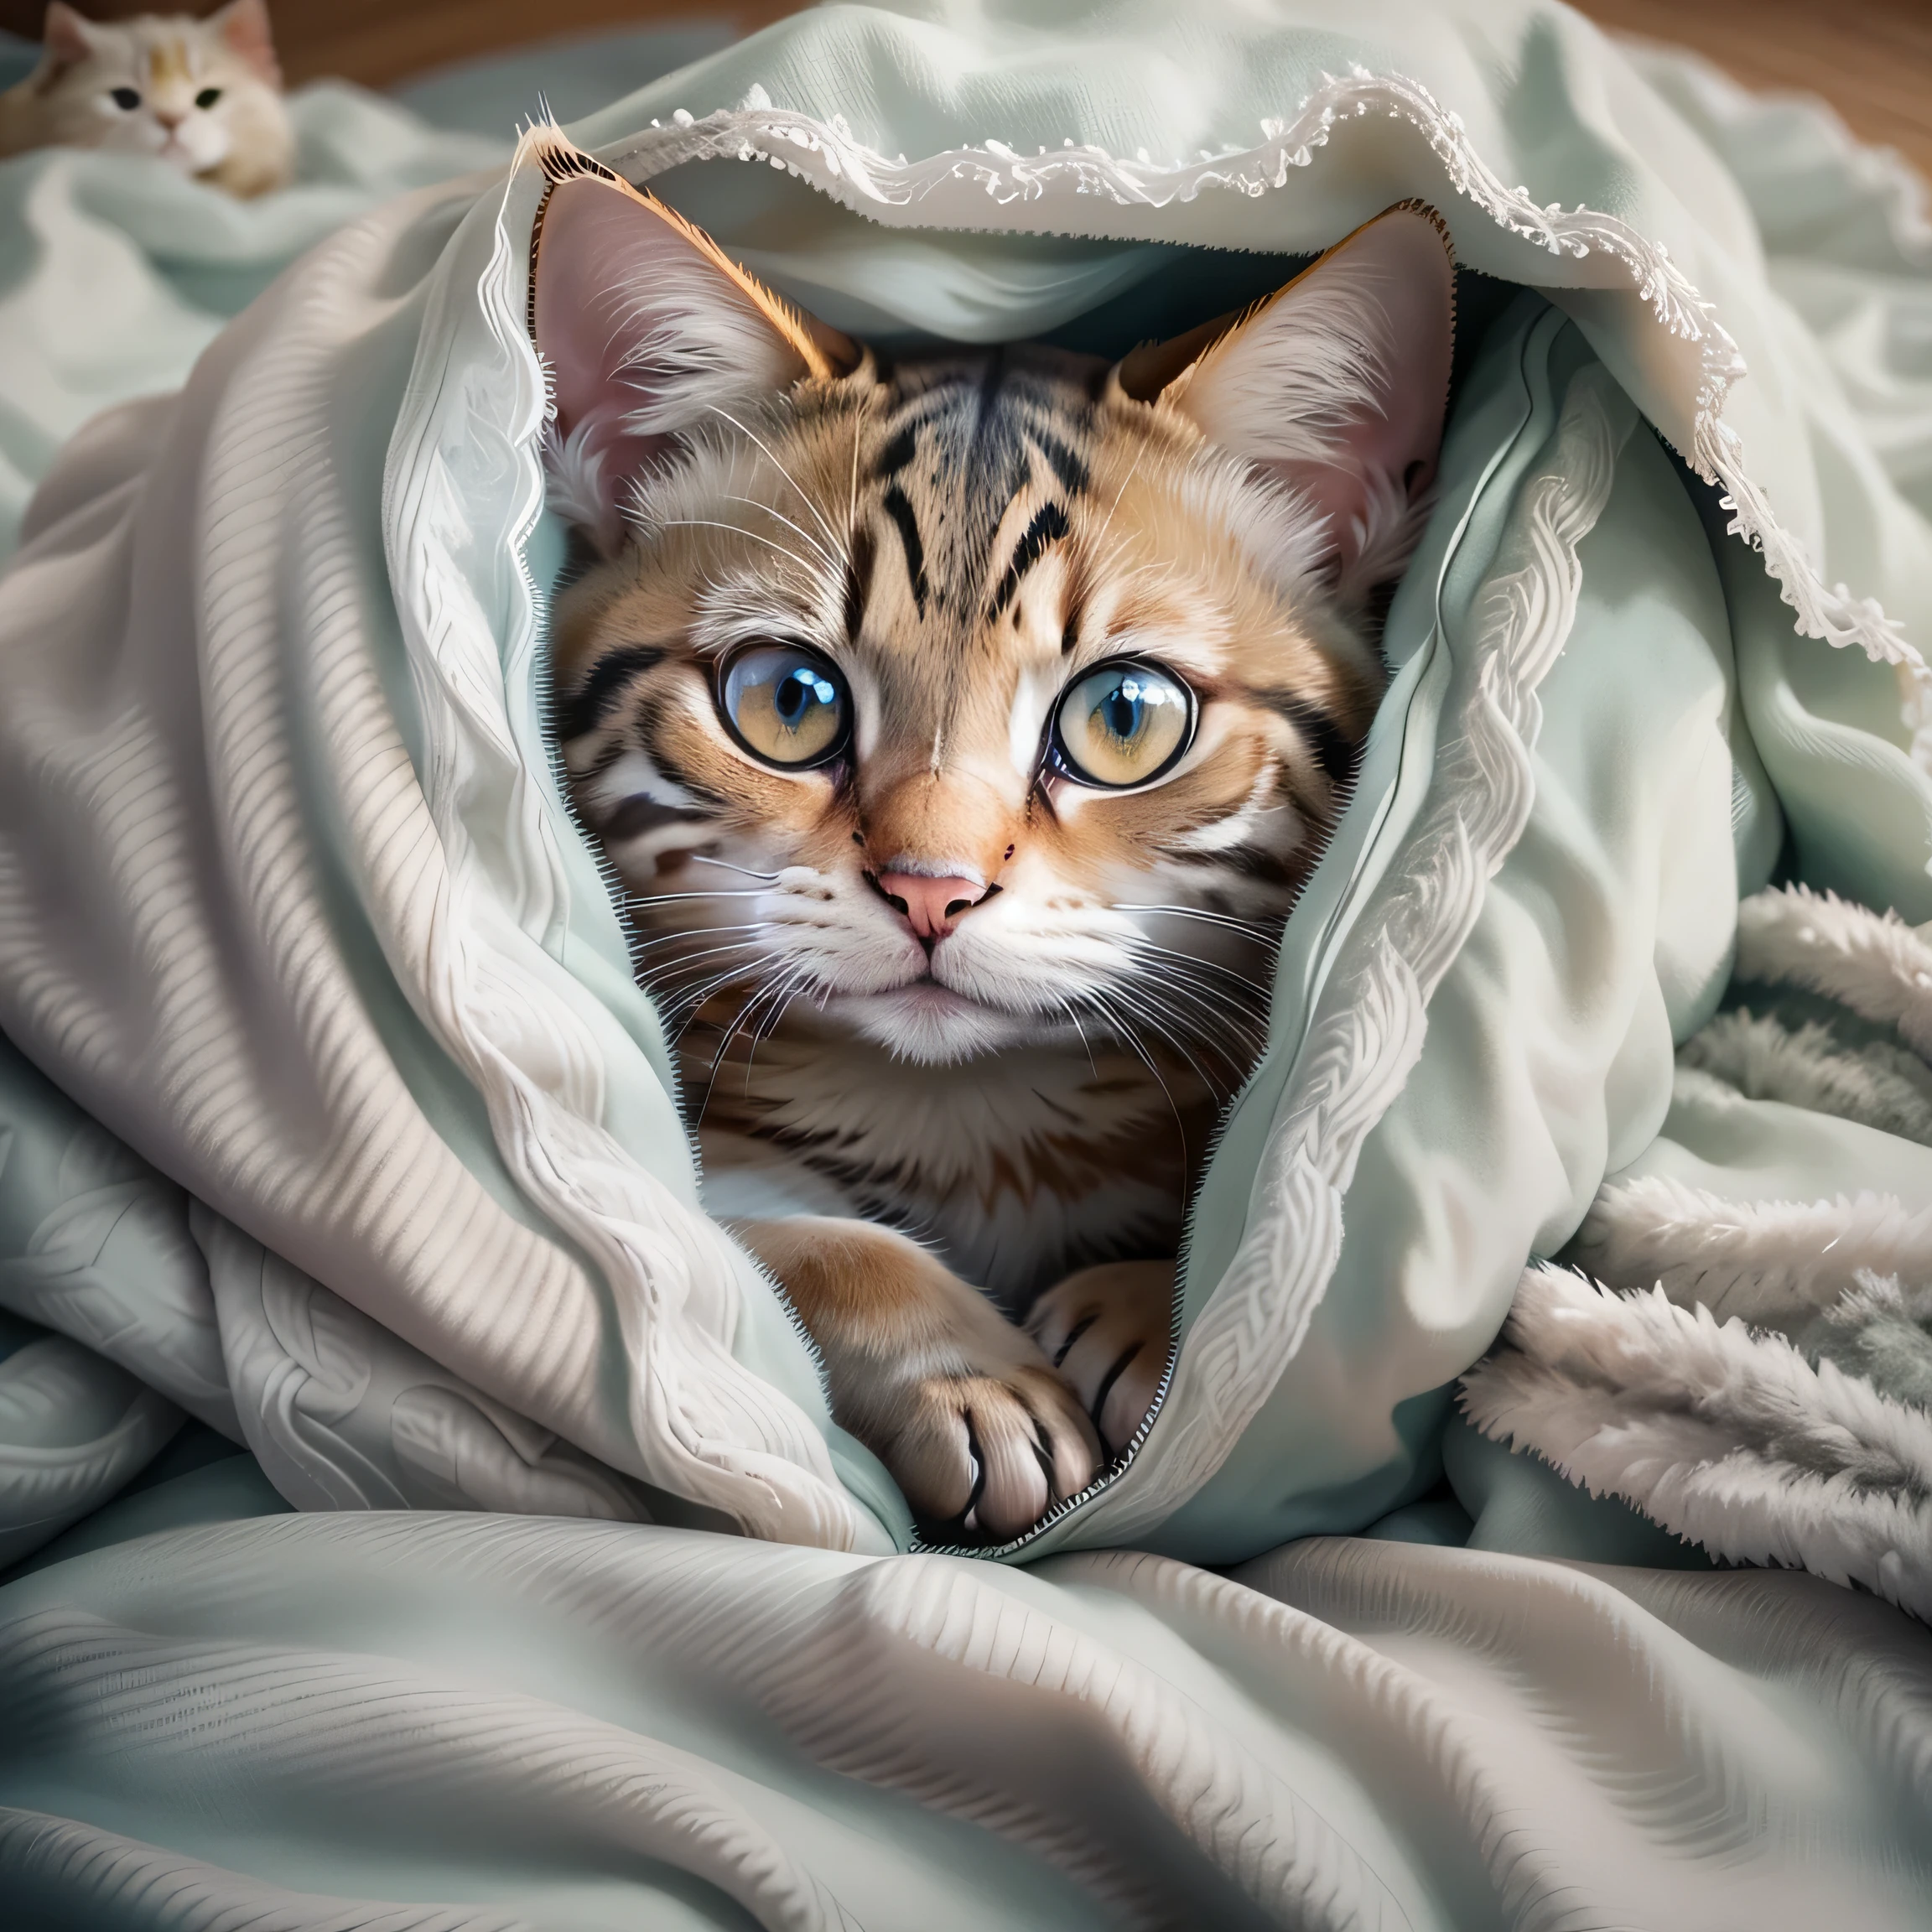 hay un gato que se esconde debajo de una manta, acurrucado bajo las sábanas, concealment, MIRANDOTE, cómodo debajo de la manta, Fotos De Gatos, cubierto con una manta, Cute Fotos De Gatos, expresión asustada, Gato enfermo acostado en el dormitorio., mirando a la cámara, con ojos lindos, fundar, Ojo agudo, lindo gato